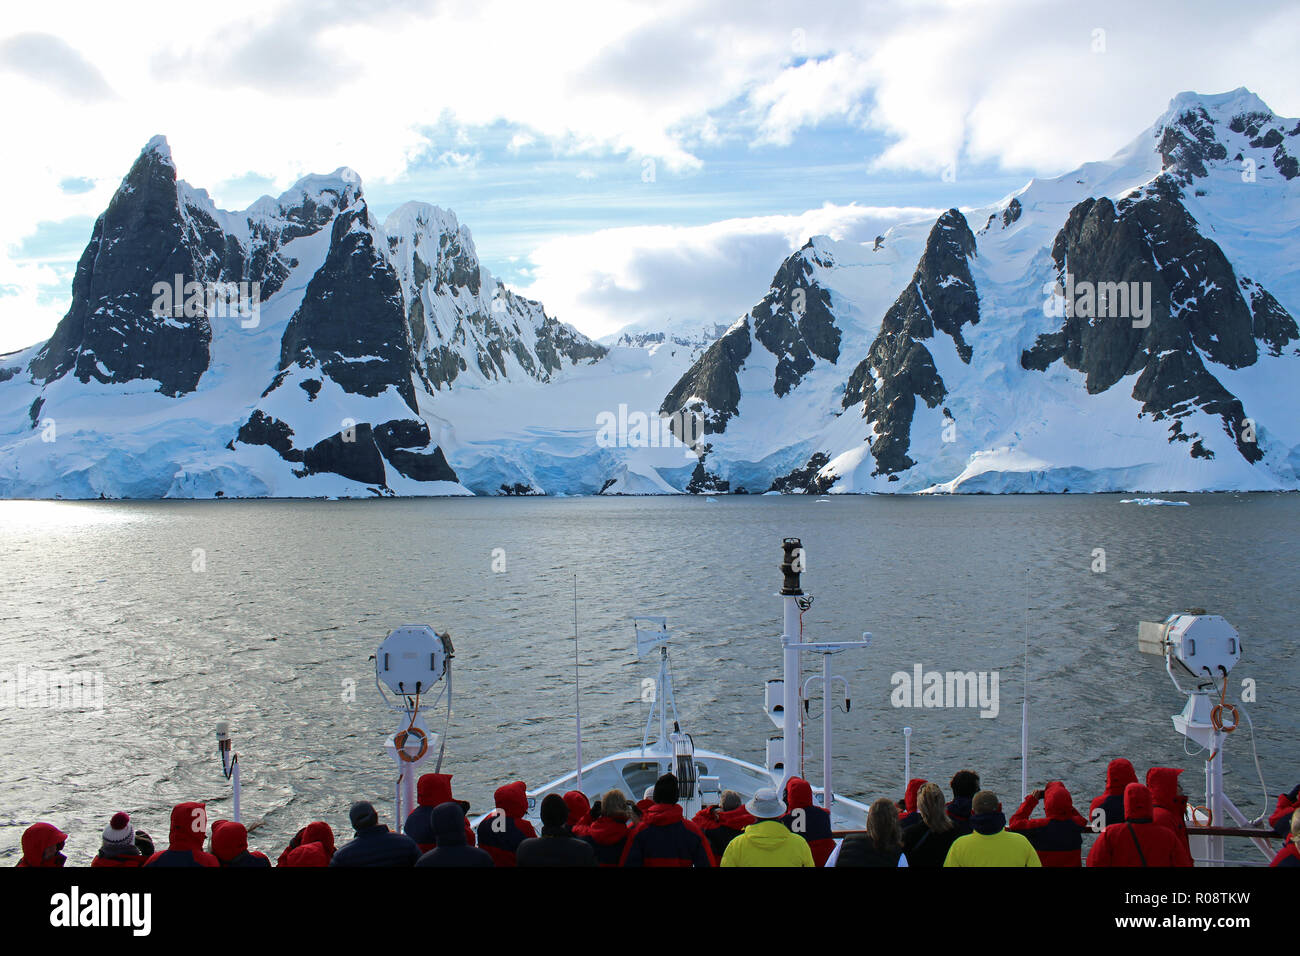 Les passagers de croisière expédition en admirant la vue imprenable que leurs navires navigue à travers la péninsule antarctique, Canal Lemaire Banque D'Images